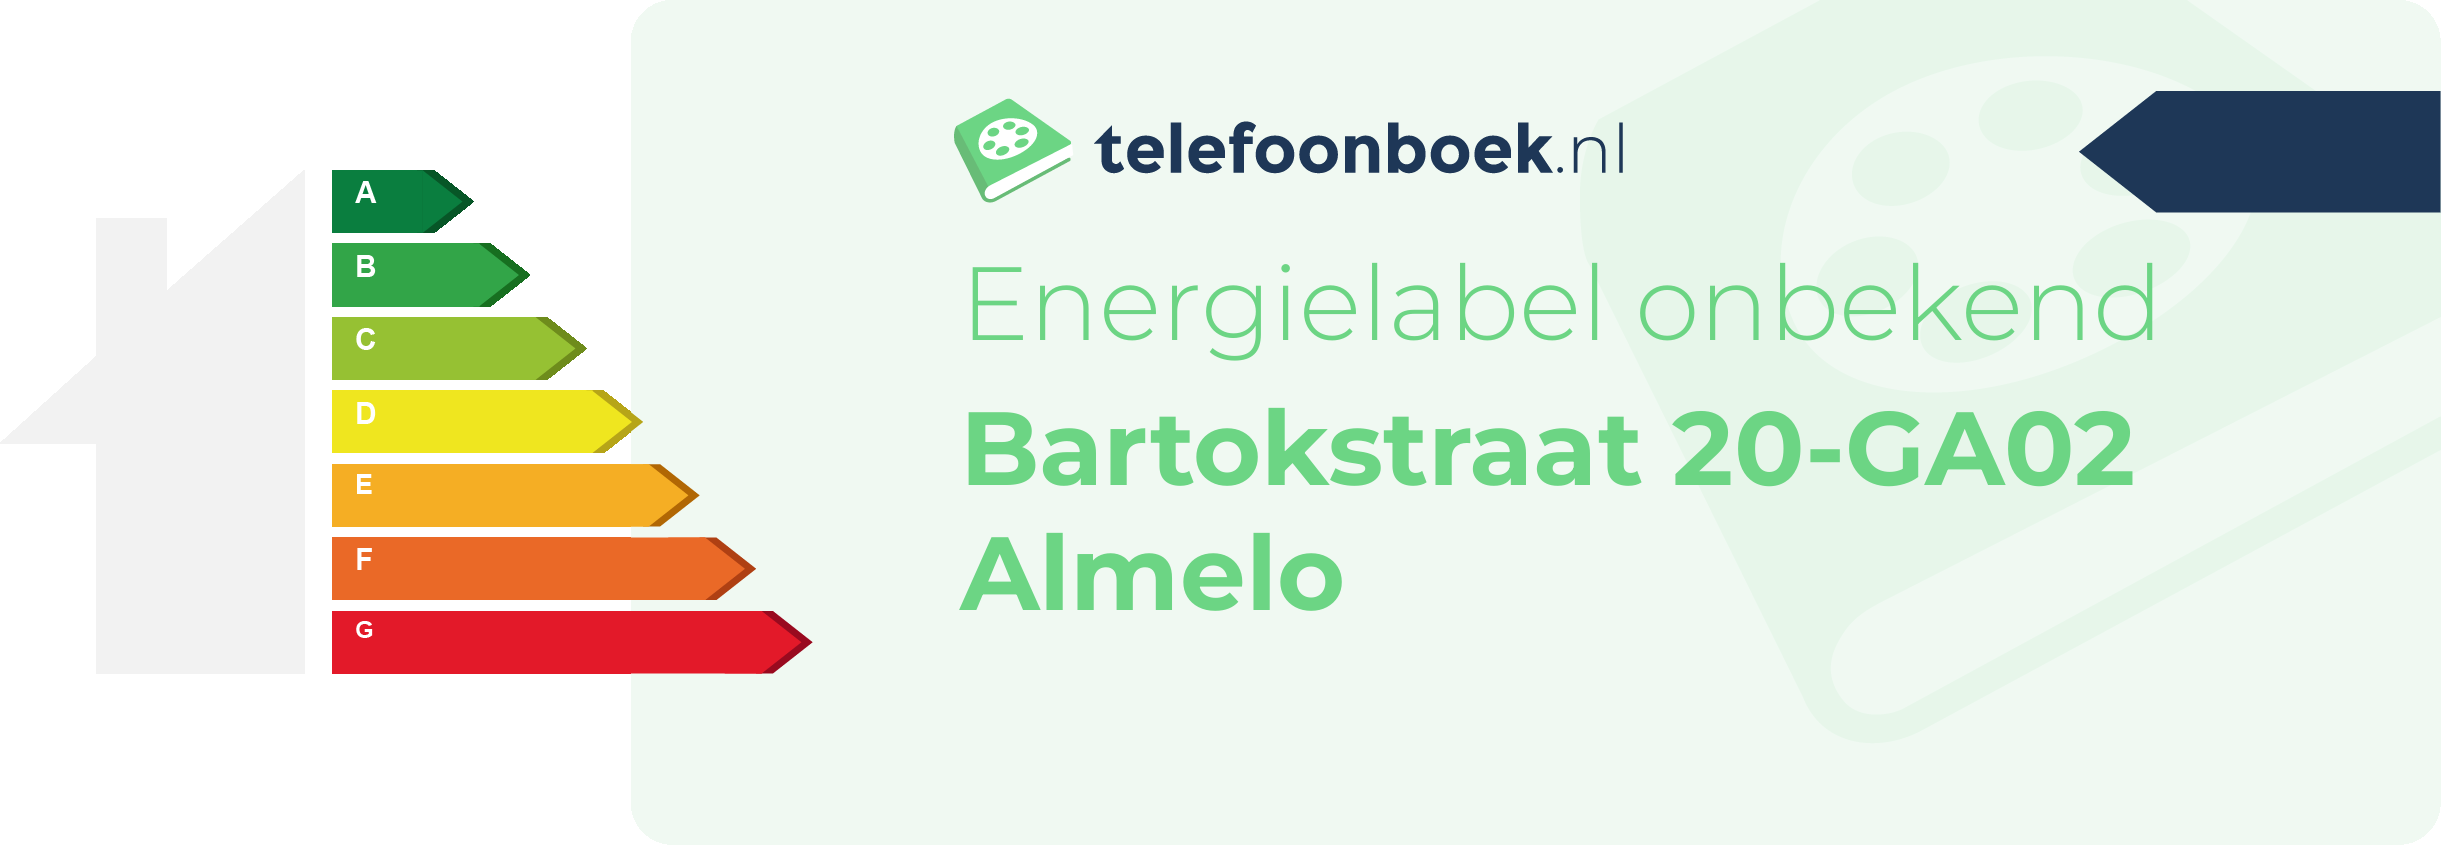 Energielabel Bartokstraat 20-GA02 Almelo